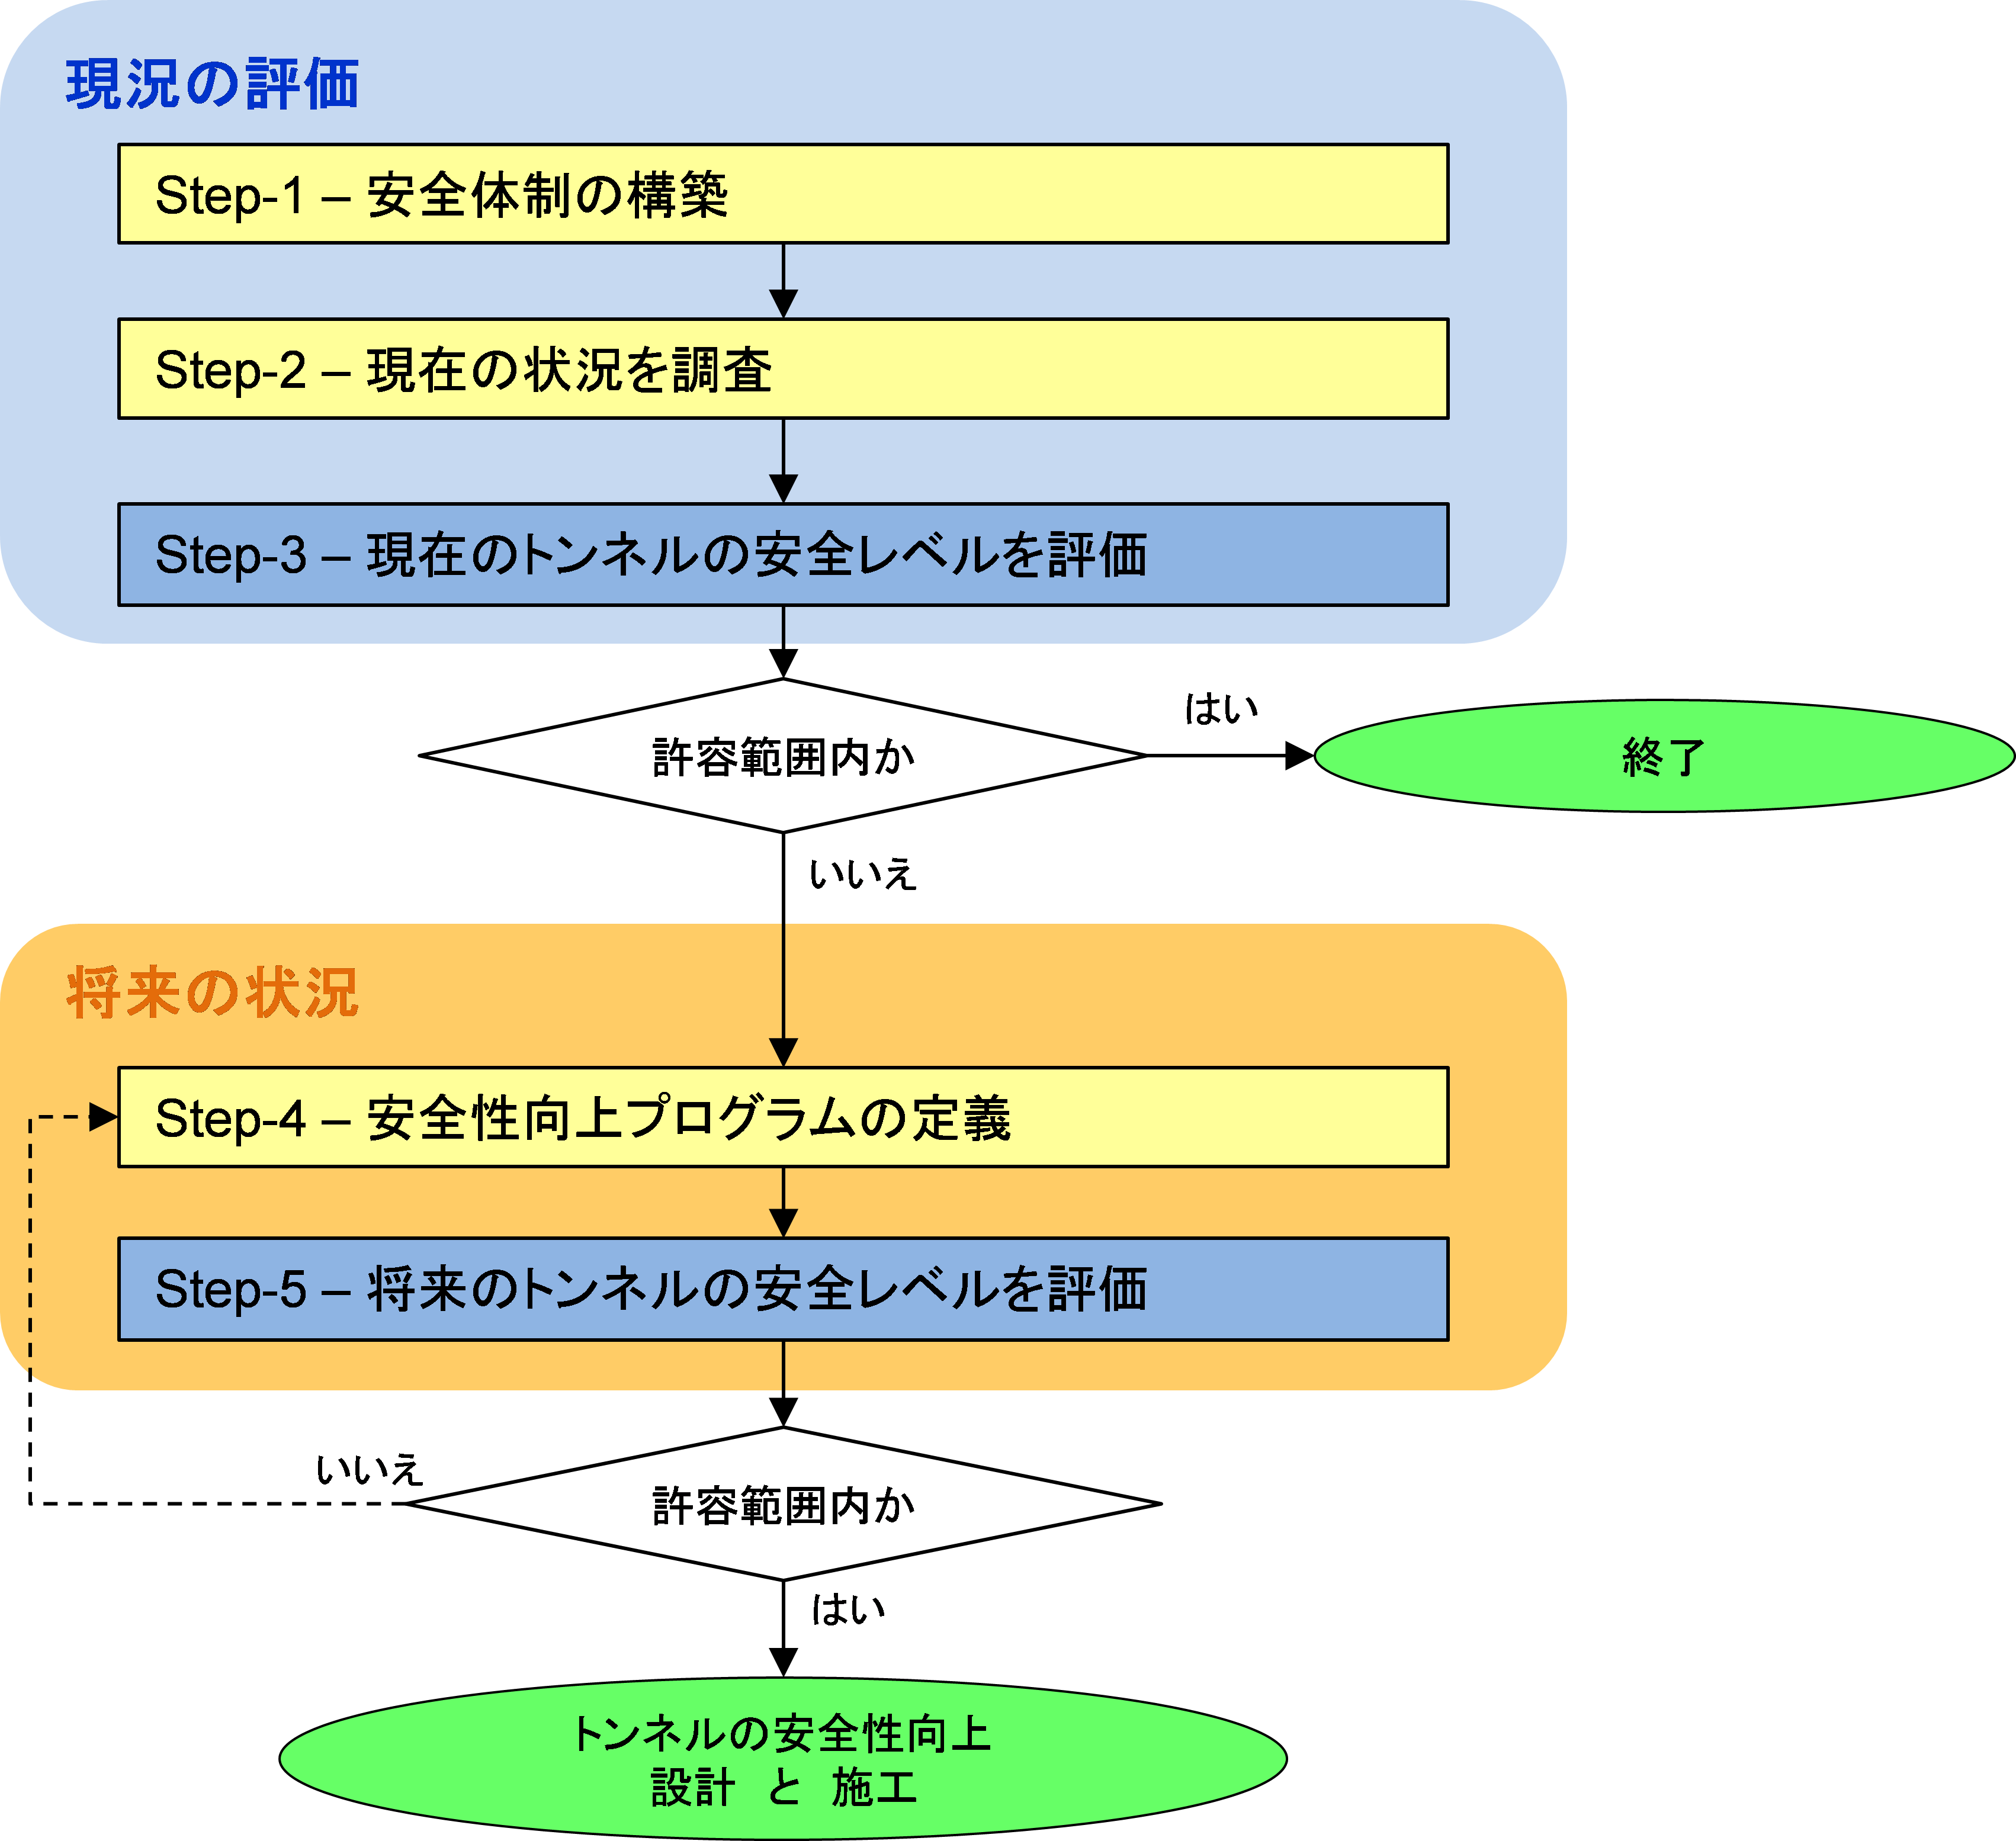 図 2.8-1　：多段階プロセスのフローチャート